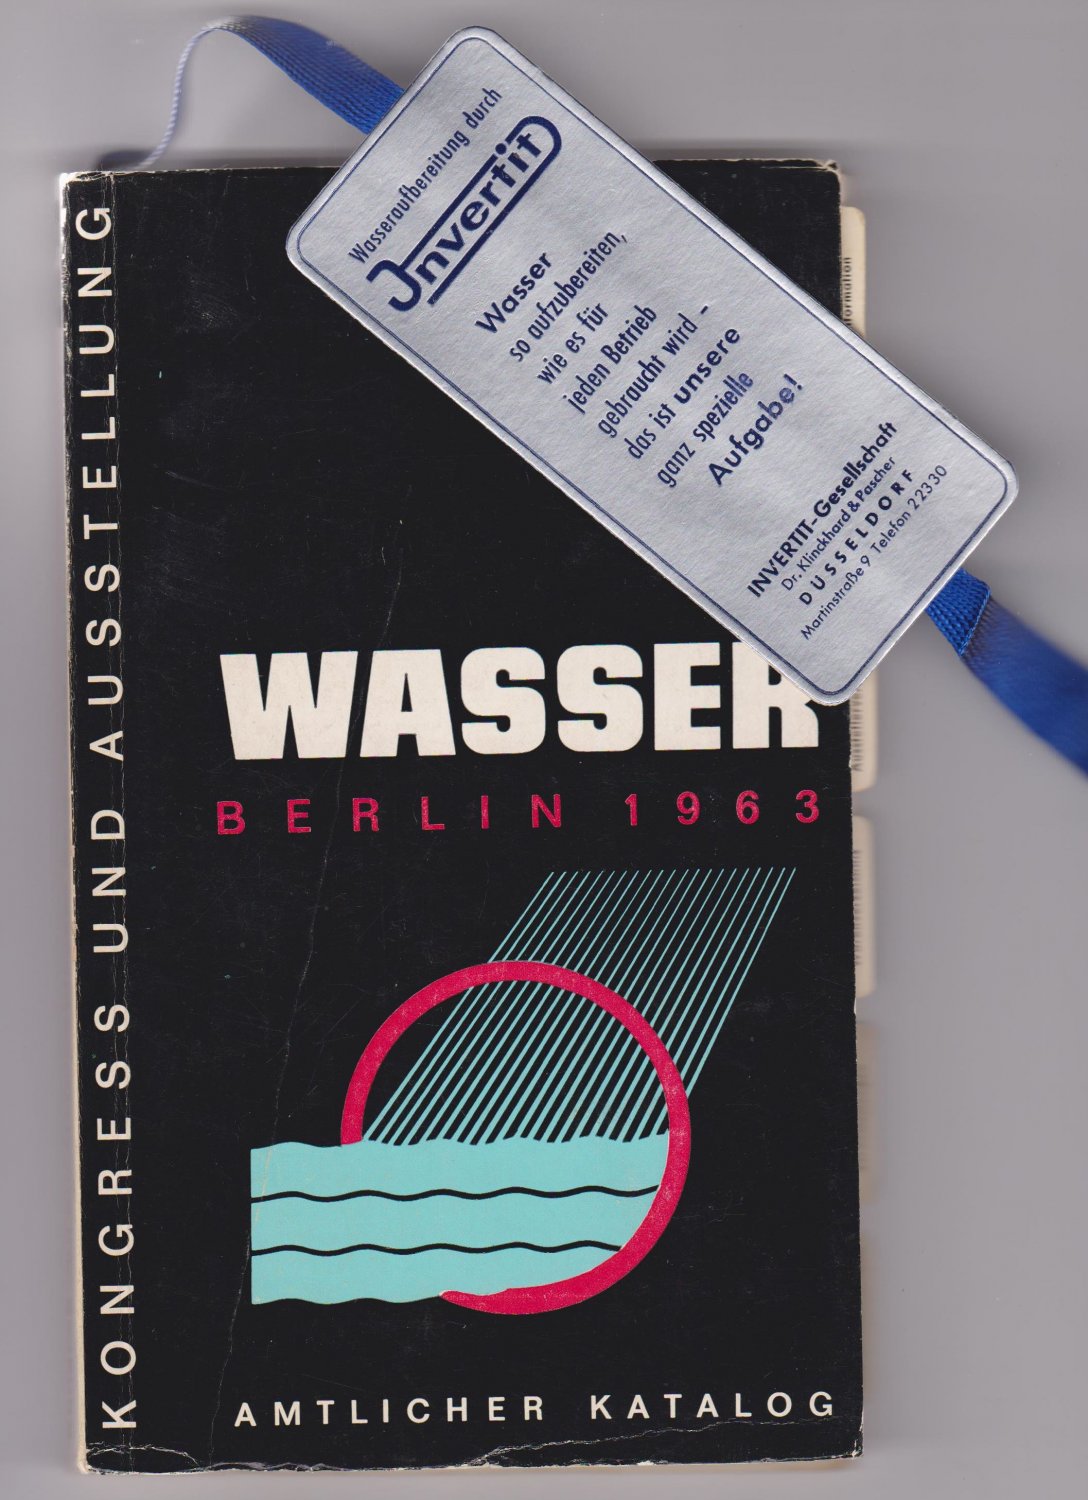   Wasser. Berlin 1963. Kongreß und Ausstellung. Amtlicher Katalog. 